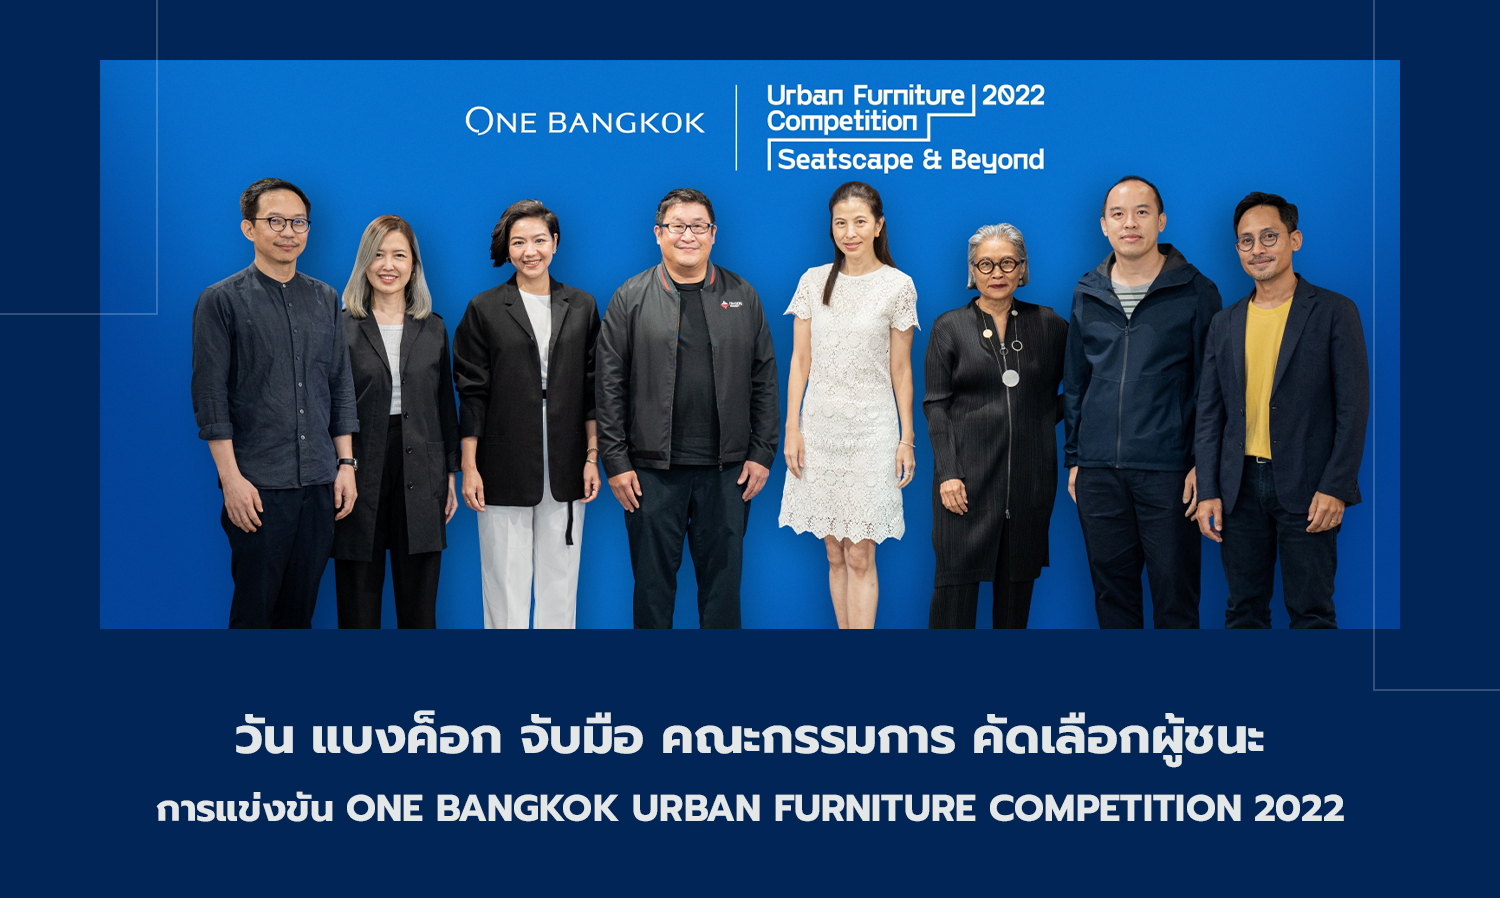 วัน แบงค็อก จับมือ คณะกรรมการ คัดเลือกผู้ชนะ การแข่งขัน One Bangkok Urban Furniture Competition 2022